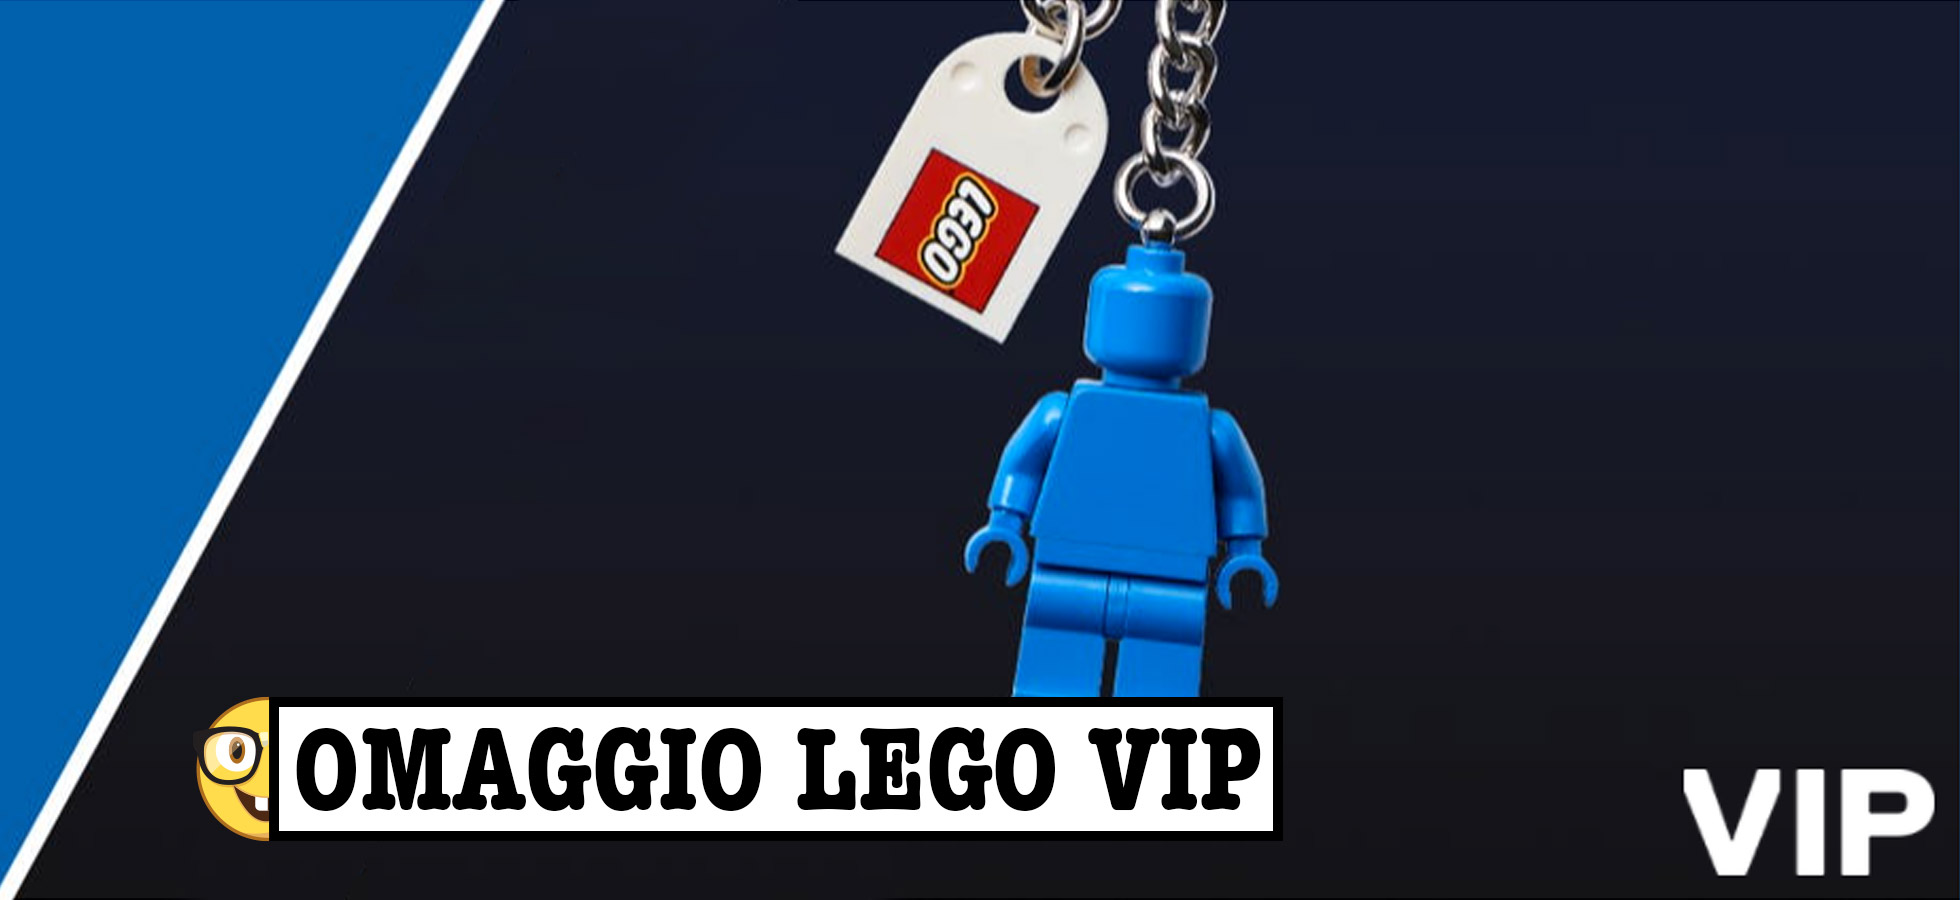 Portachiavi LEGO VIP in omaggio sul LEGO Shop: Ecco come ottenerlo